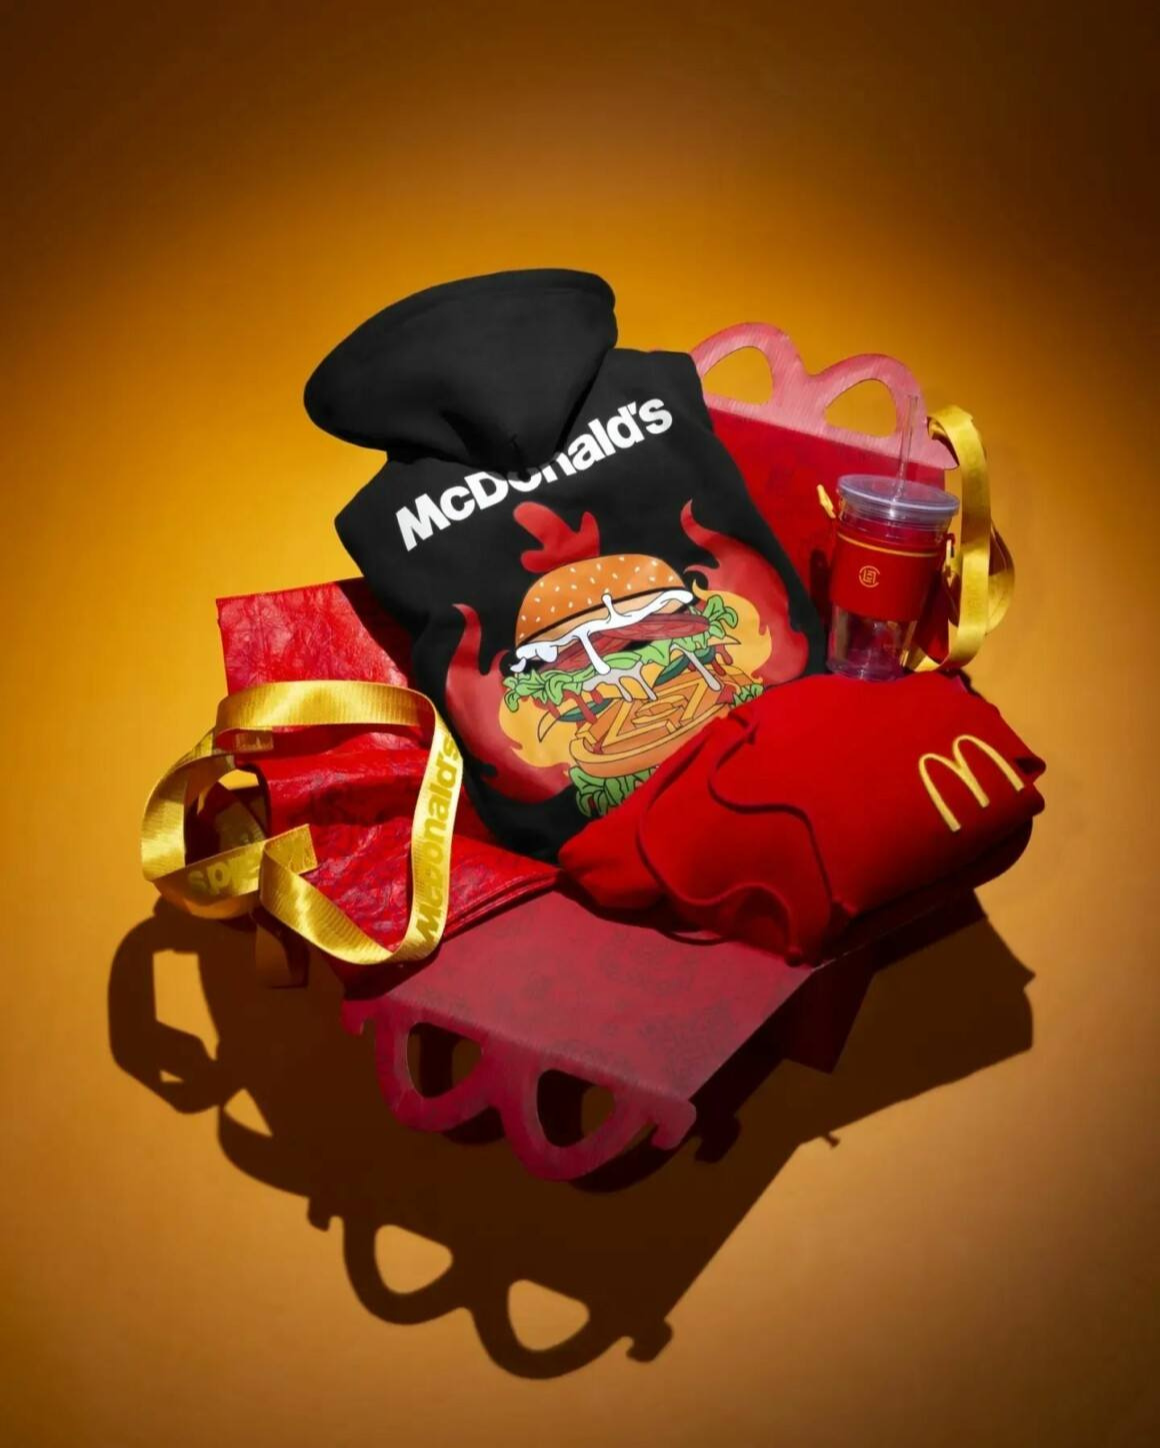 Clot celebra su 20 aniversario con una colección en colaboración con McDonald's